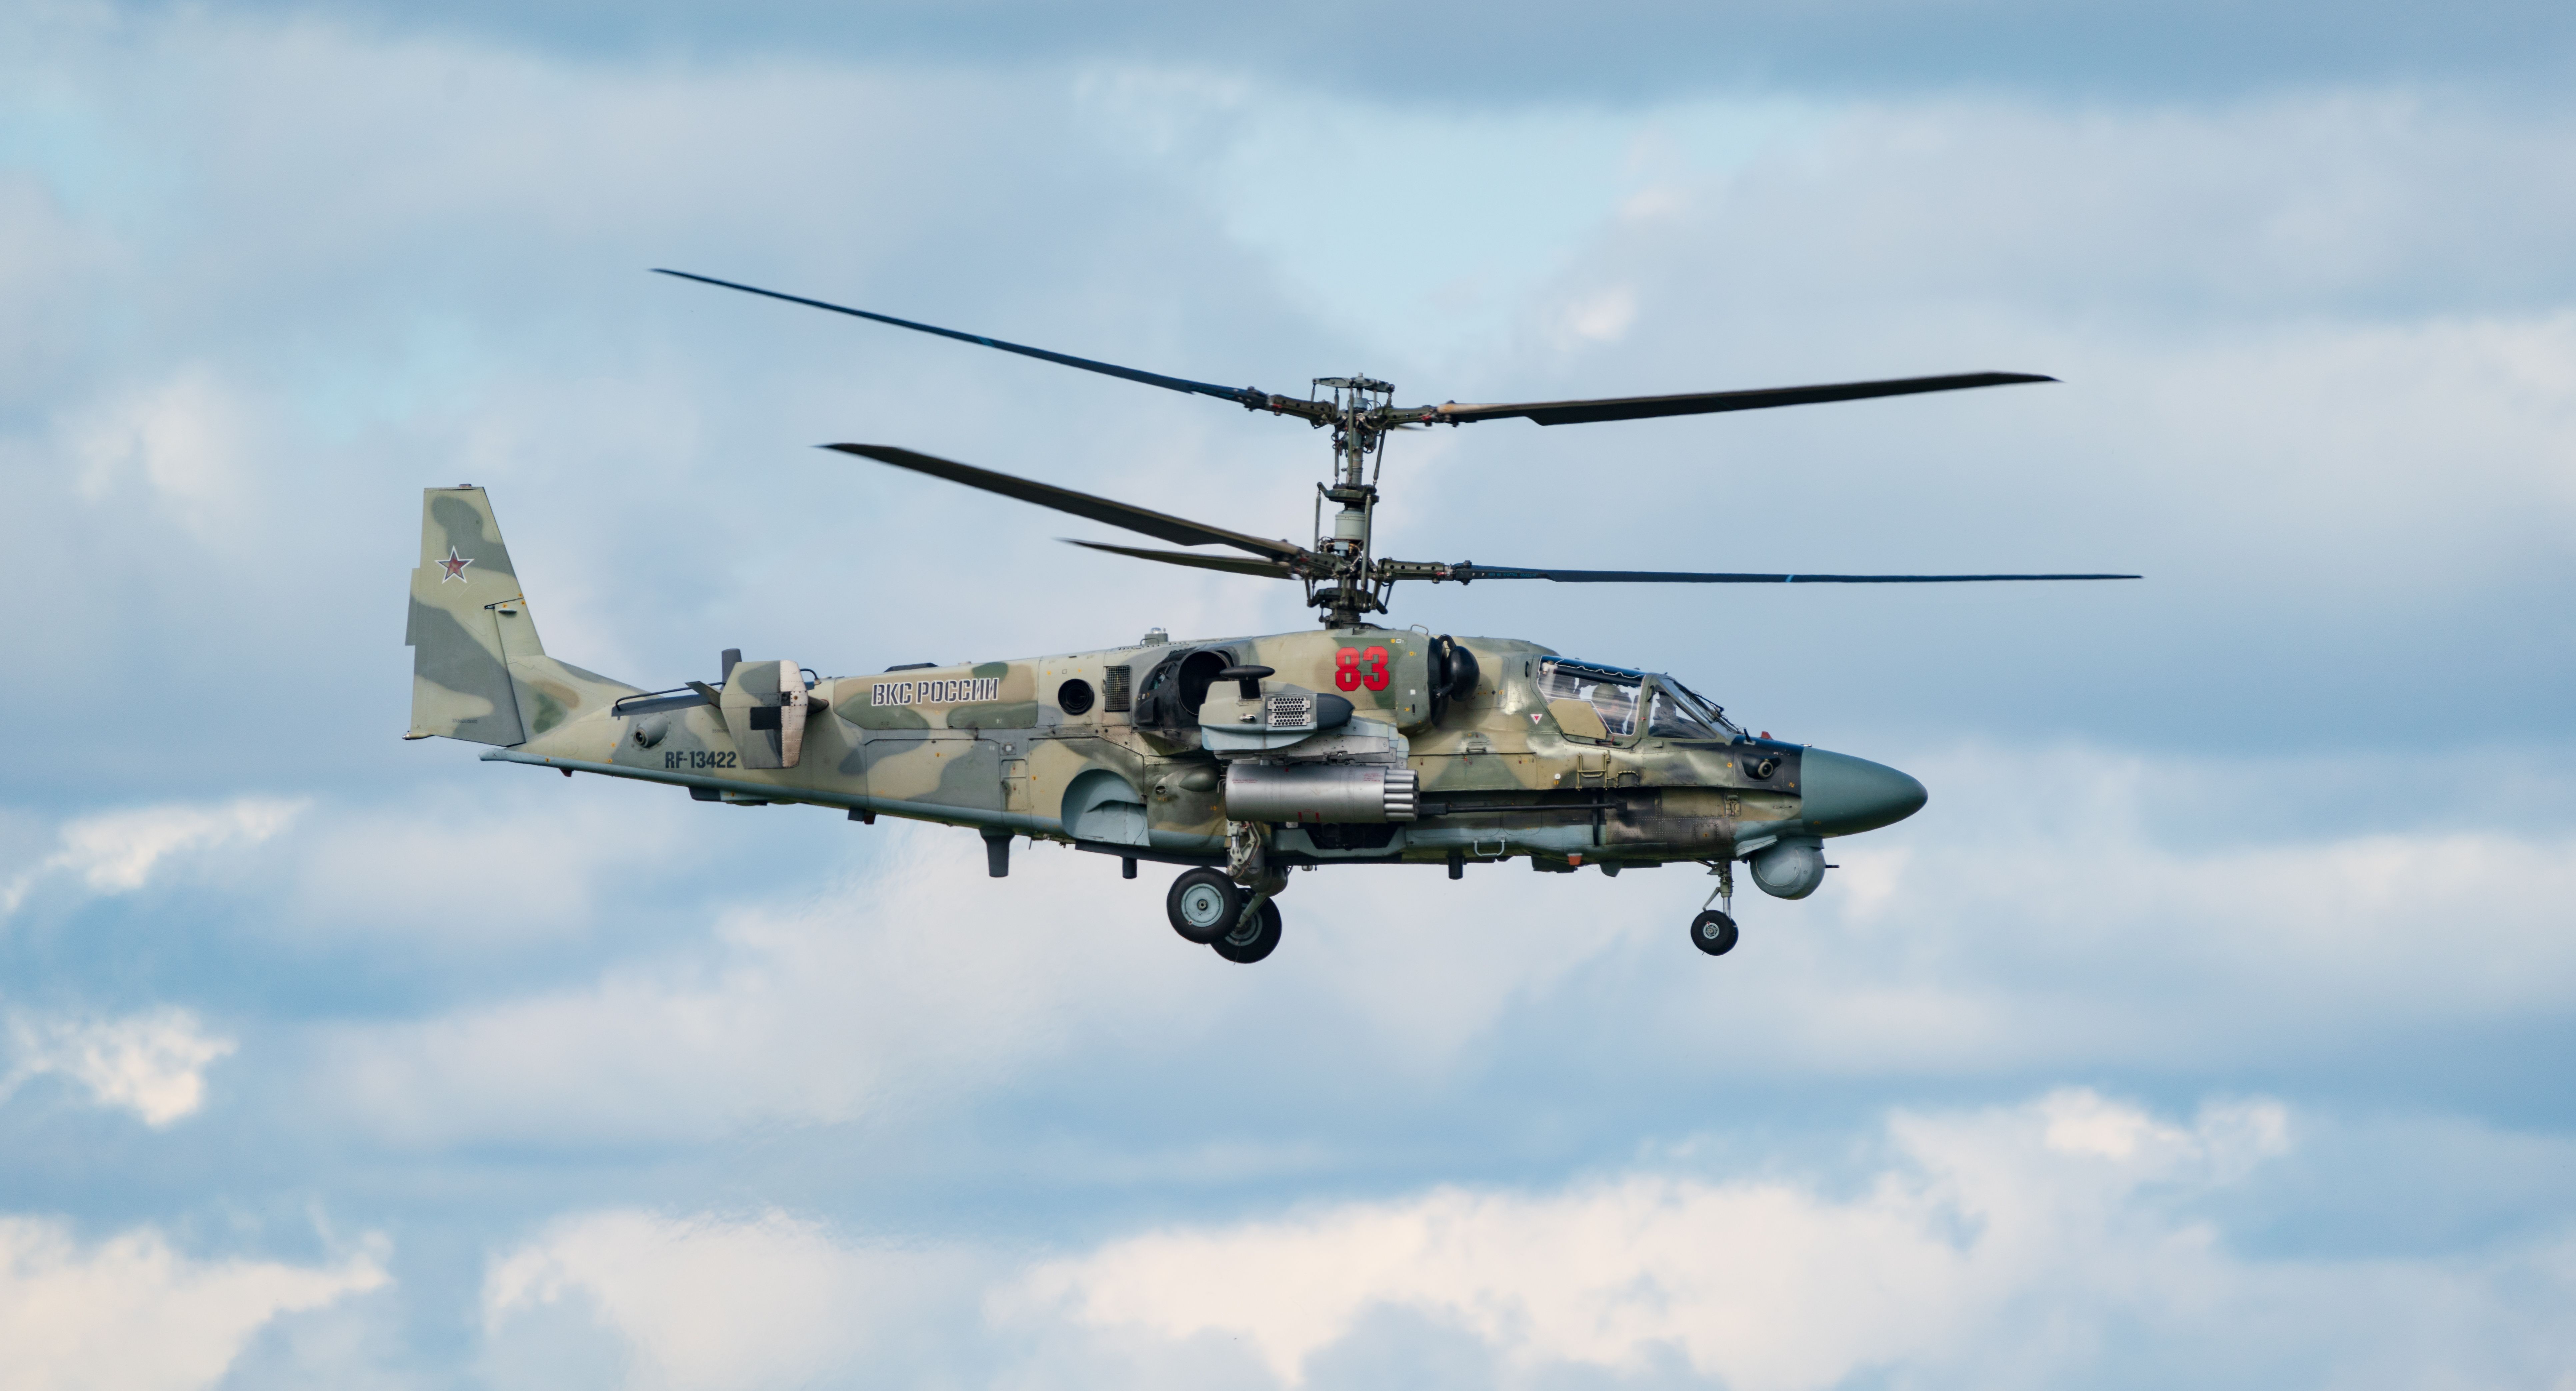 Kamov Ka-52 attack helicopter